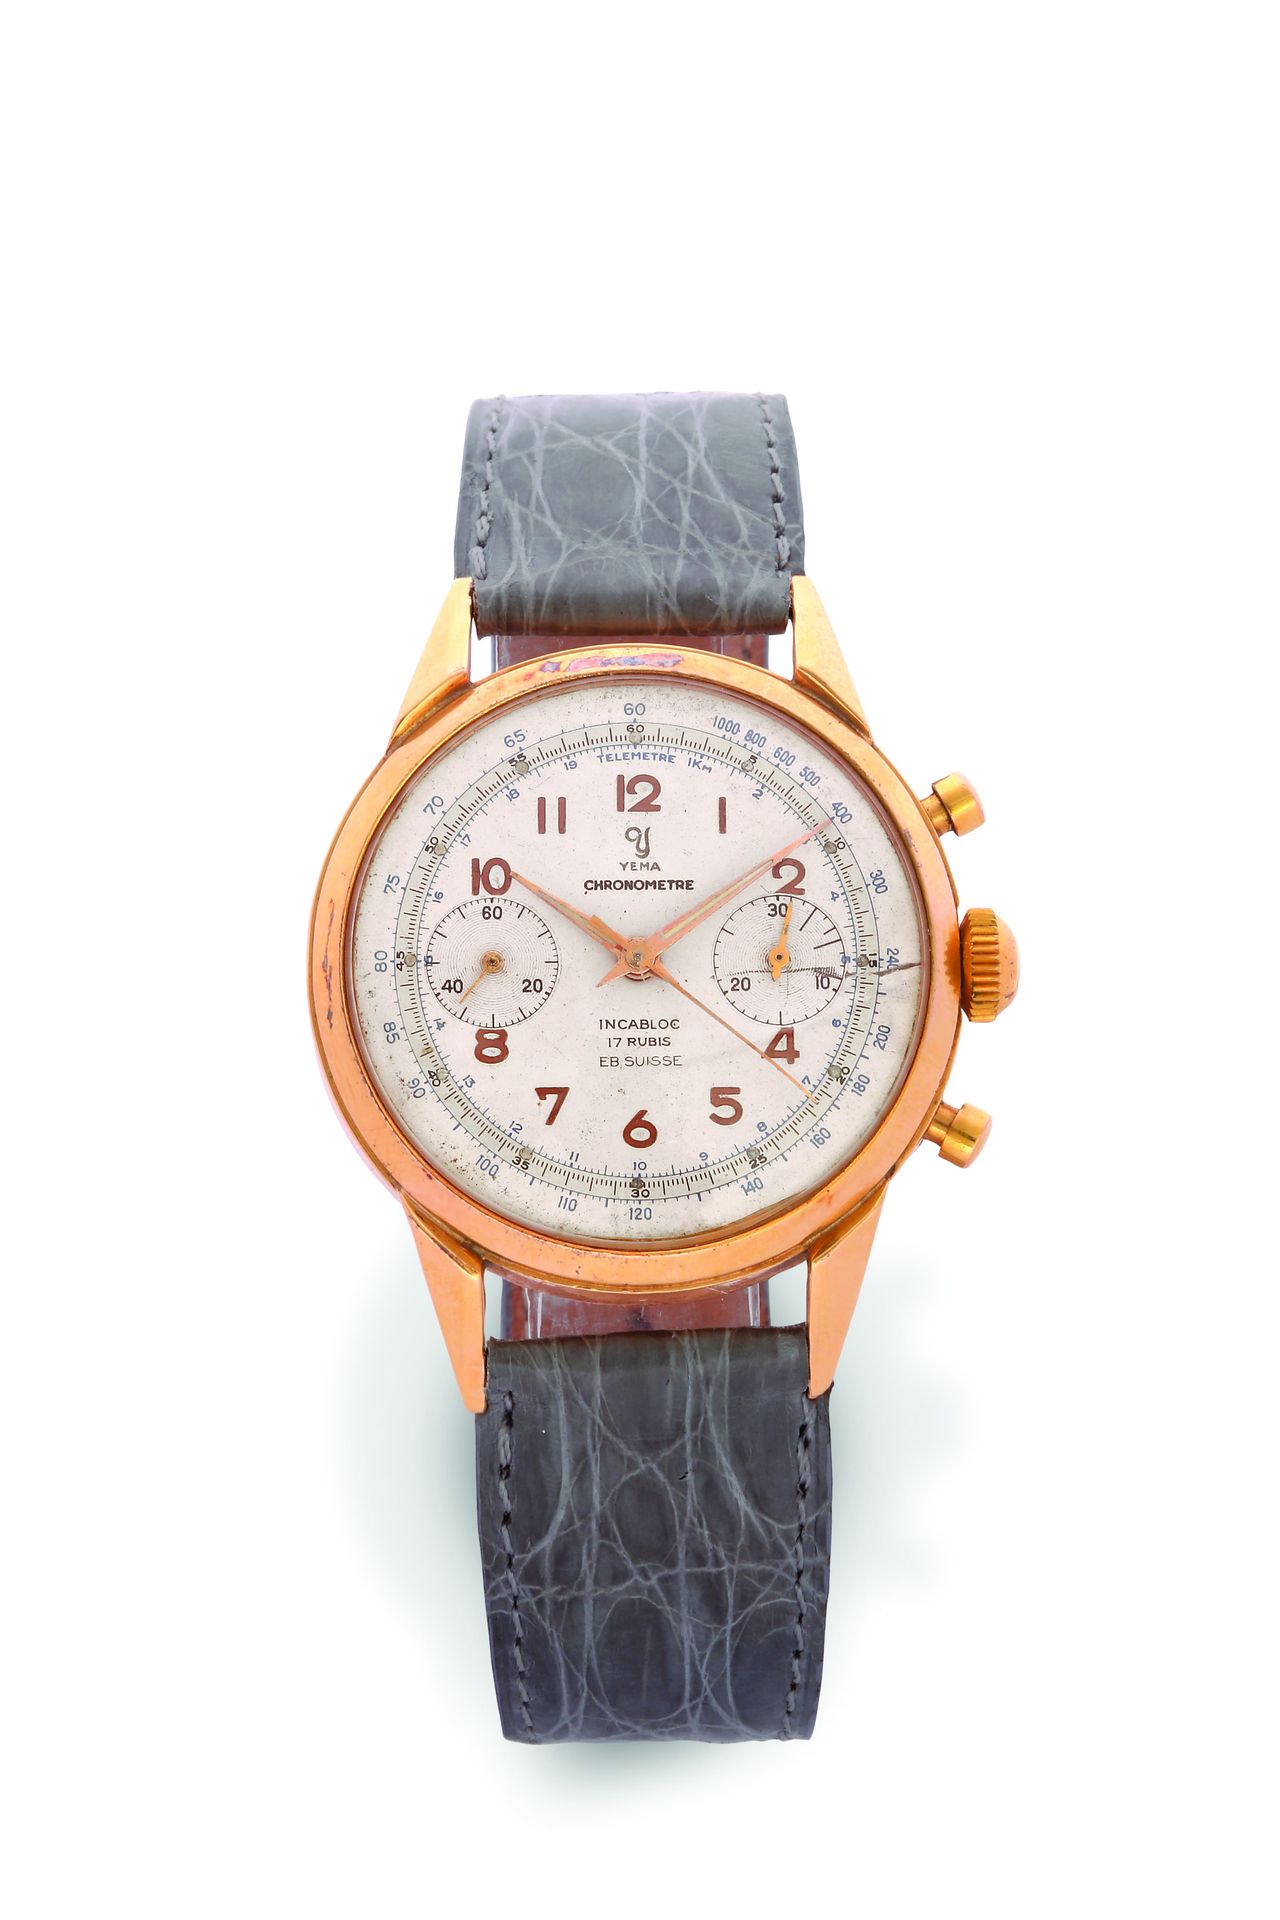 YEMA Chronograph - Chronometer
Technische Chronographenuhr aus 18 Karat Gelbgold&hellip;